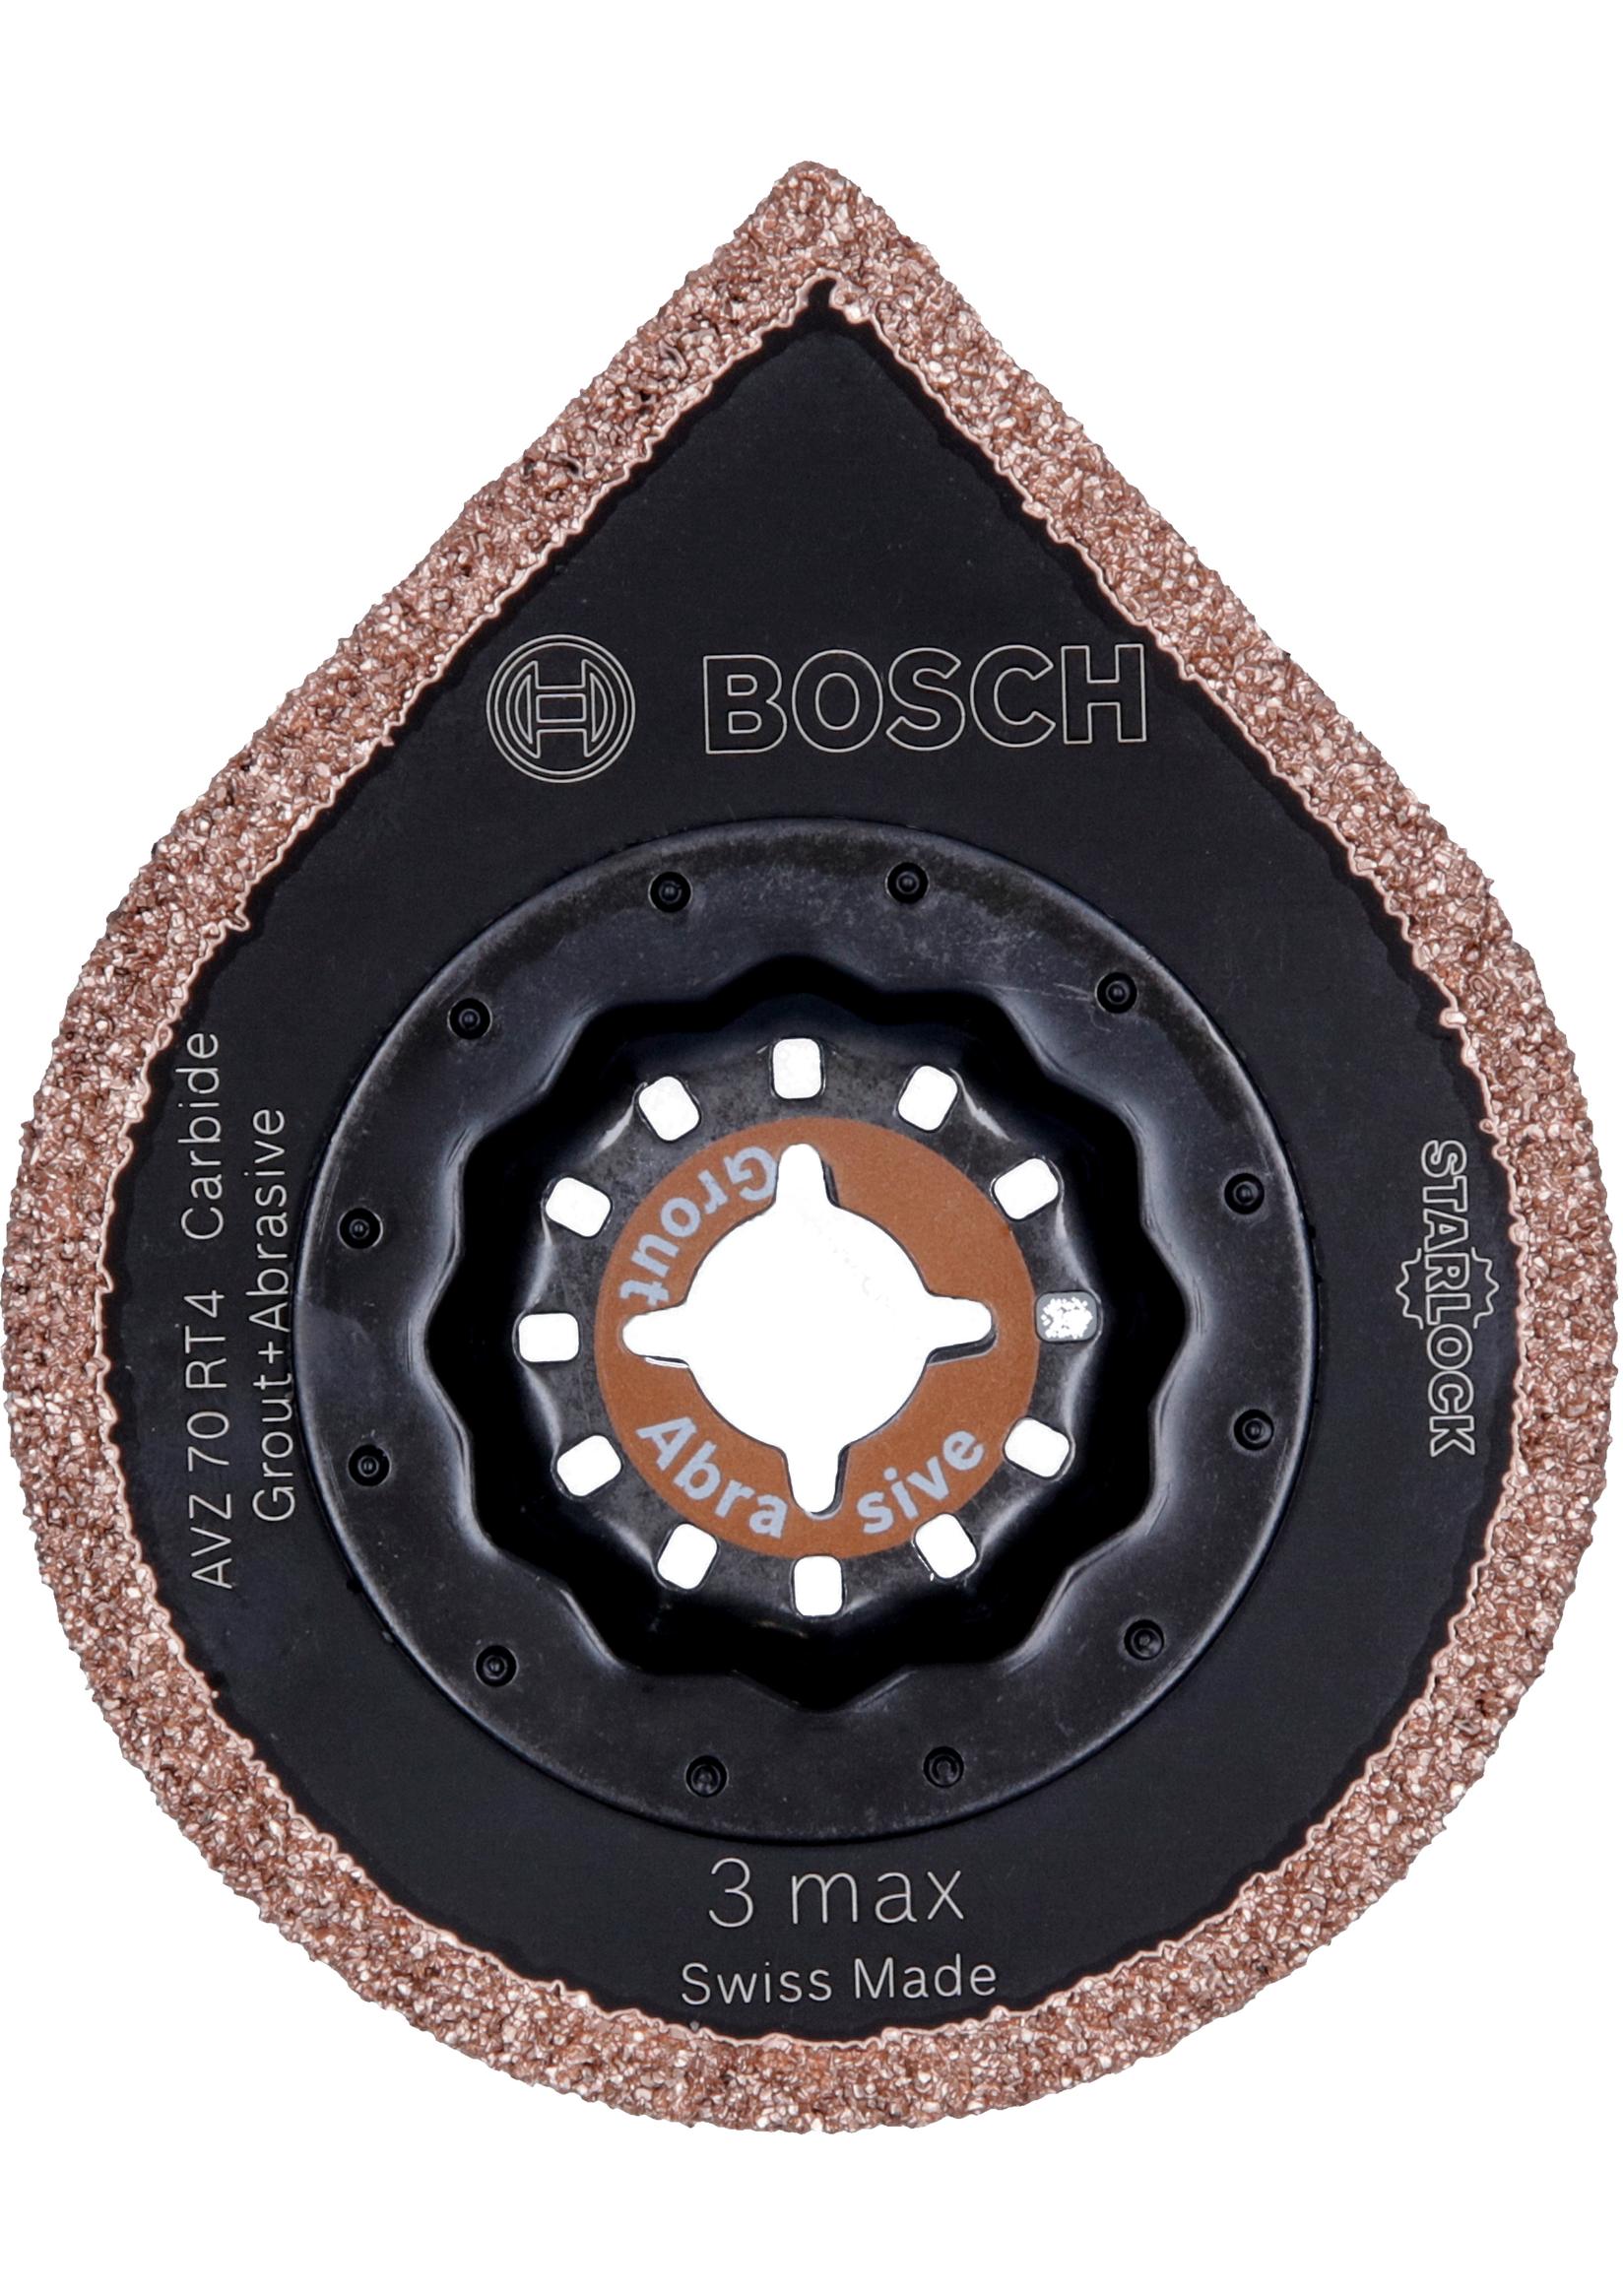 Selected image for Bosch Starlock Carbide-RIFF odstranjivač maltera AVZ 70 RT4, 3 max 2609256C51